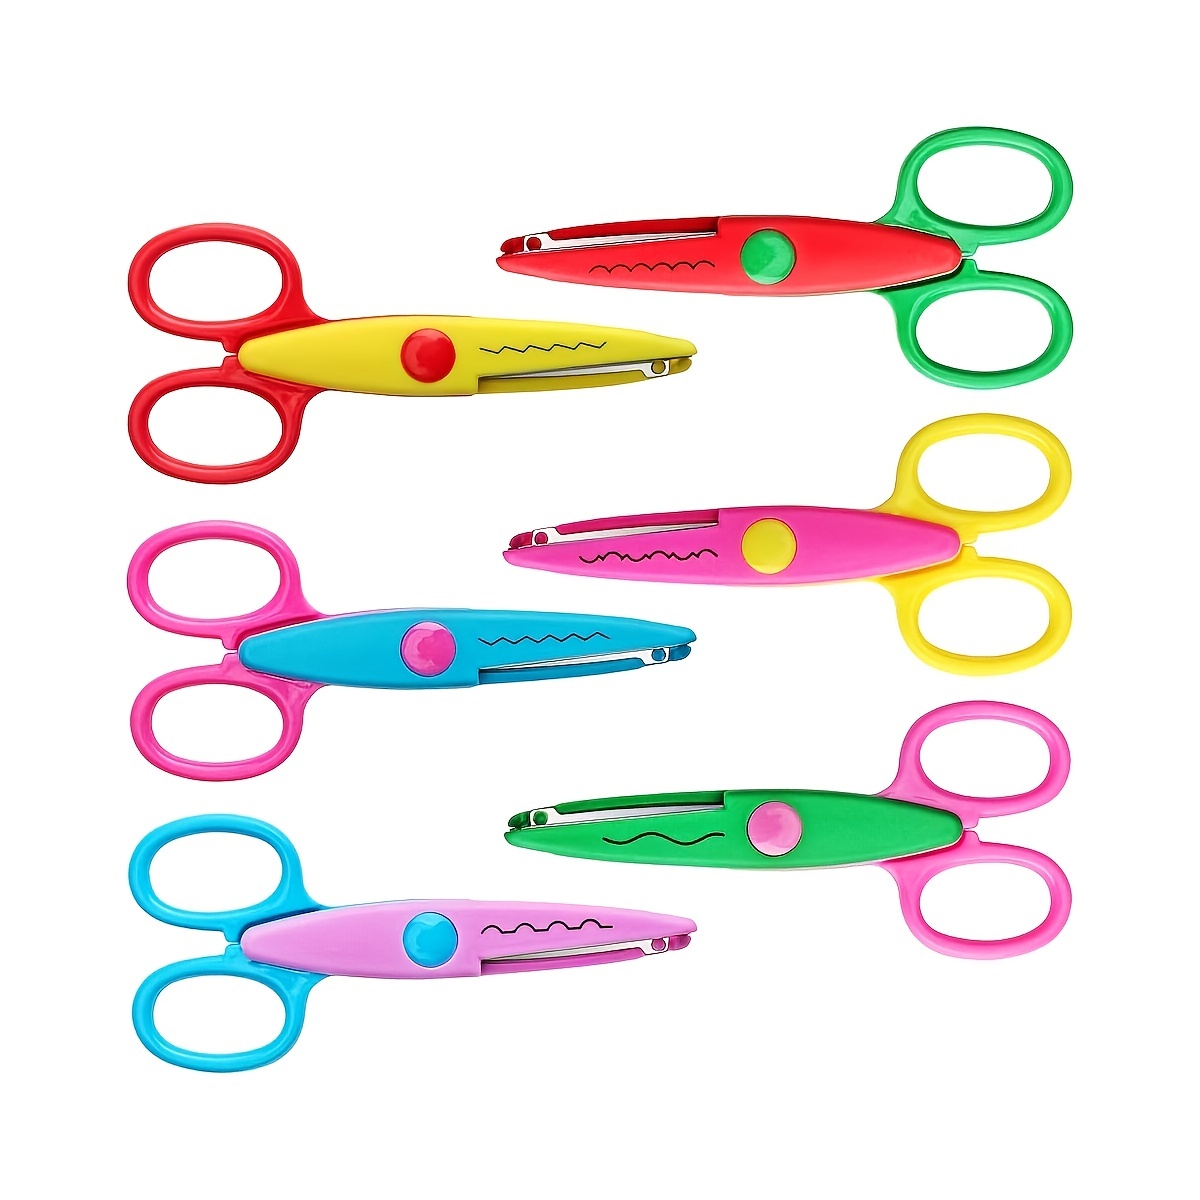 Safe & Fun Paper-Cutting Scissors - Anti-Pinch Design For Maximum Safety!